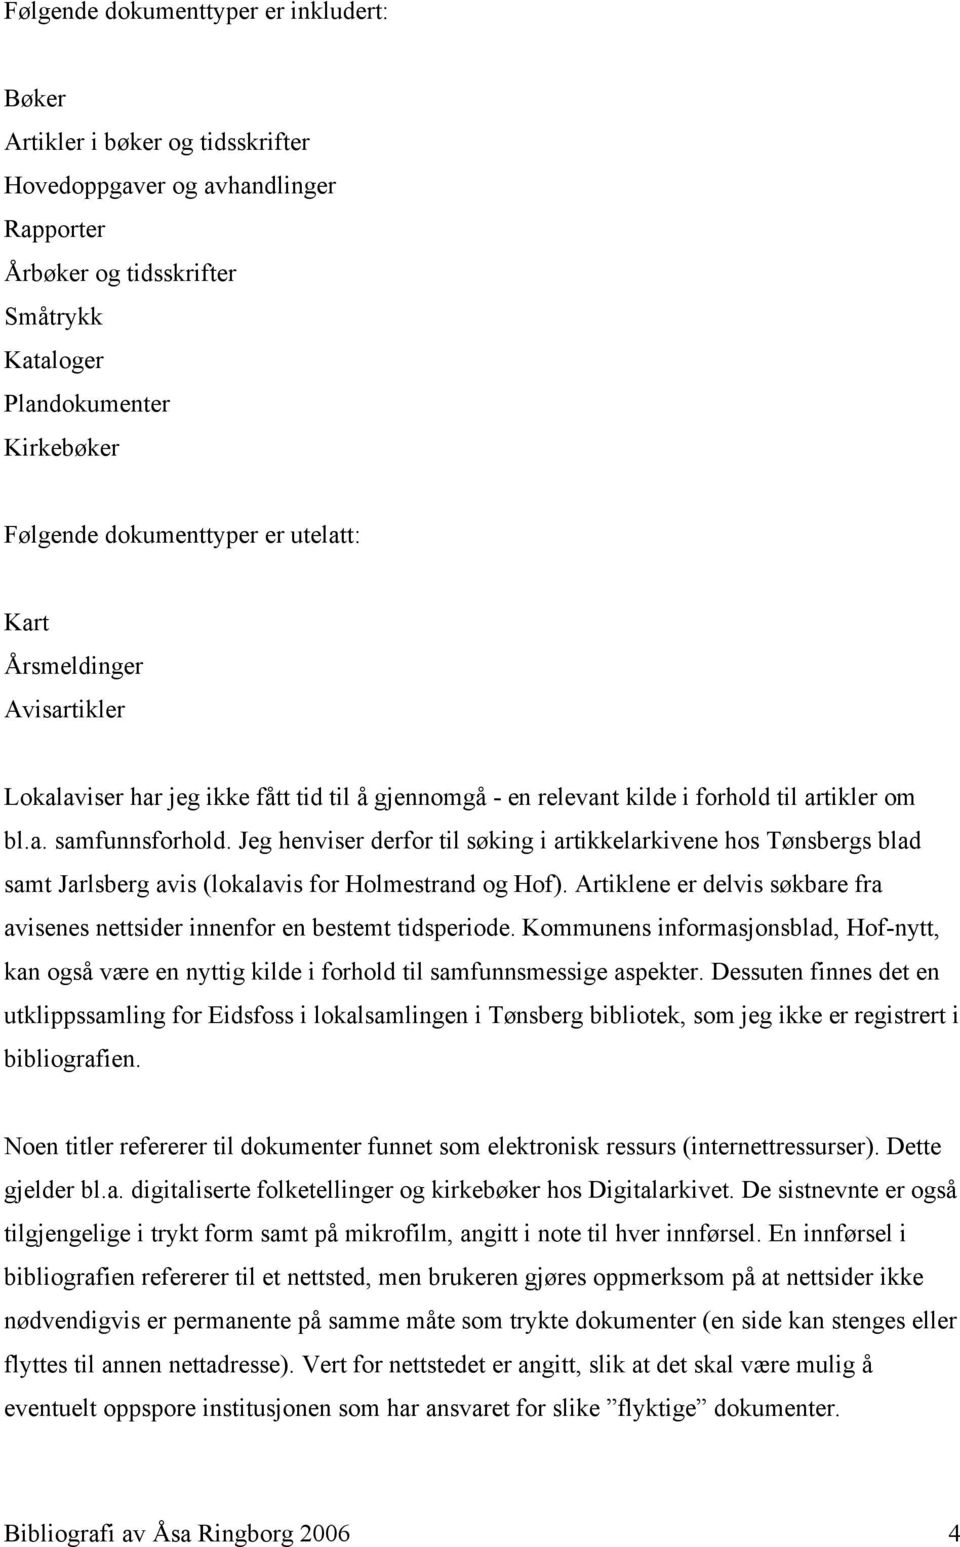 Jeg henviser derfor til søking i artikkelarkivene hos Tønsbergs blad samt Jarlsberg avis (lokalavis for Holmestrand og Hof).